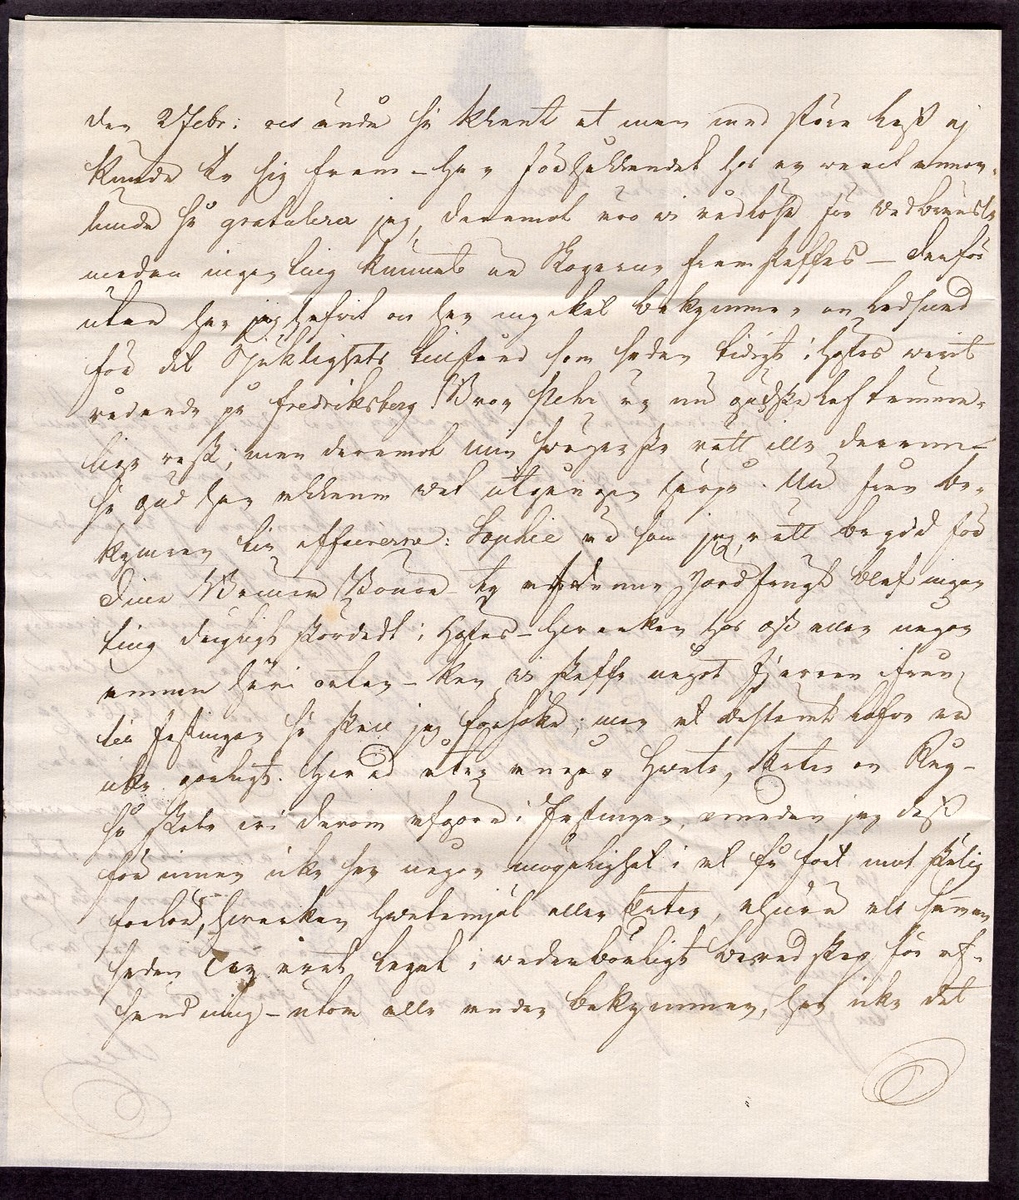 Förfilatelistiskt privatbrev skickat från Mariestad den 10 mars 1833 till Herr H Wallroth i Filipstad.

Stämpeltyp: Bågstämpel  typ 1